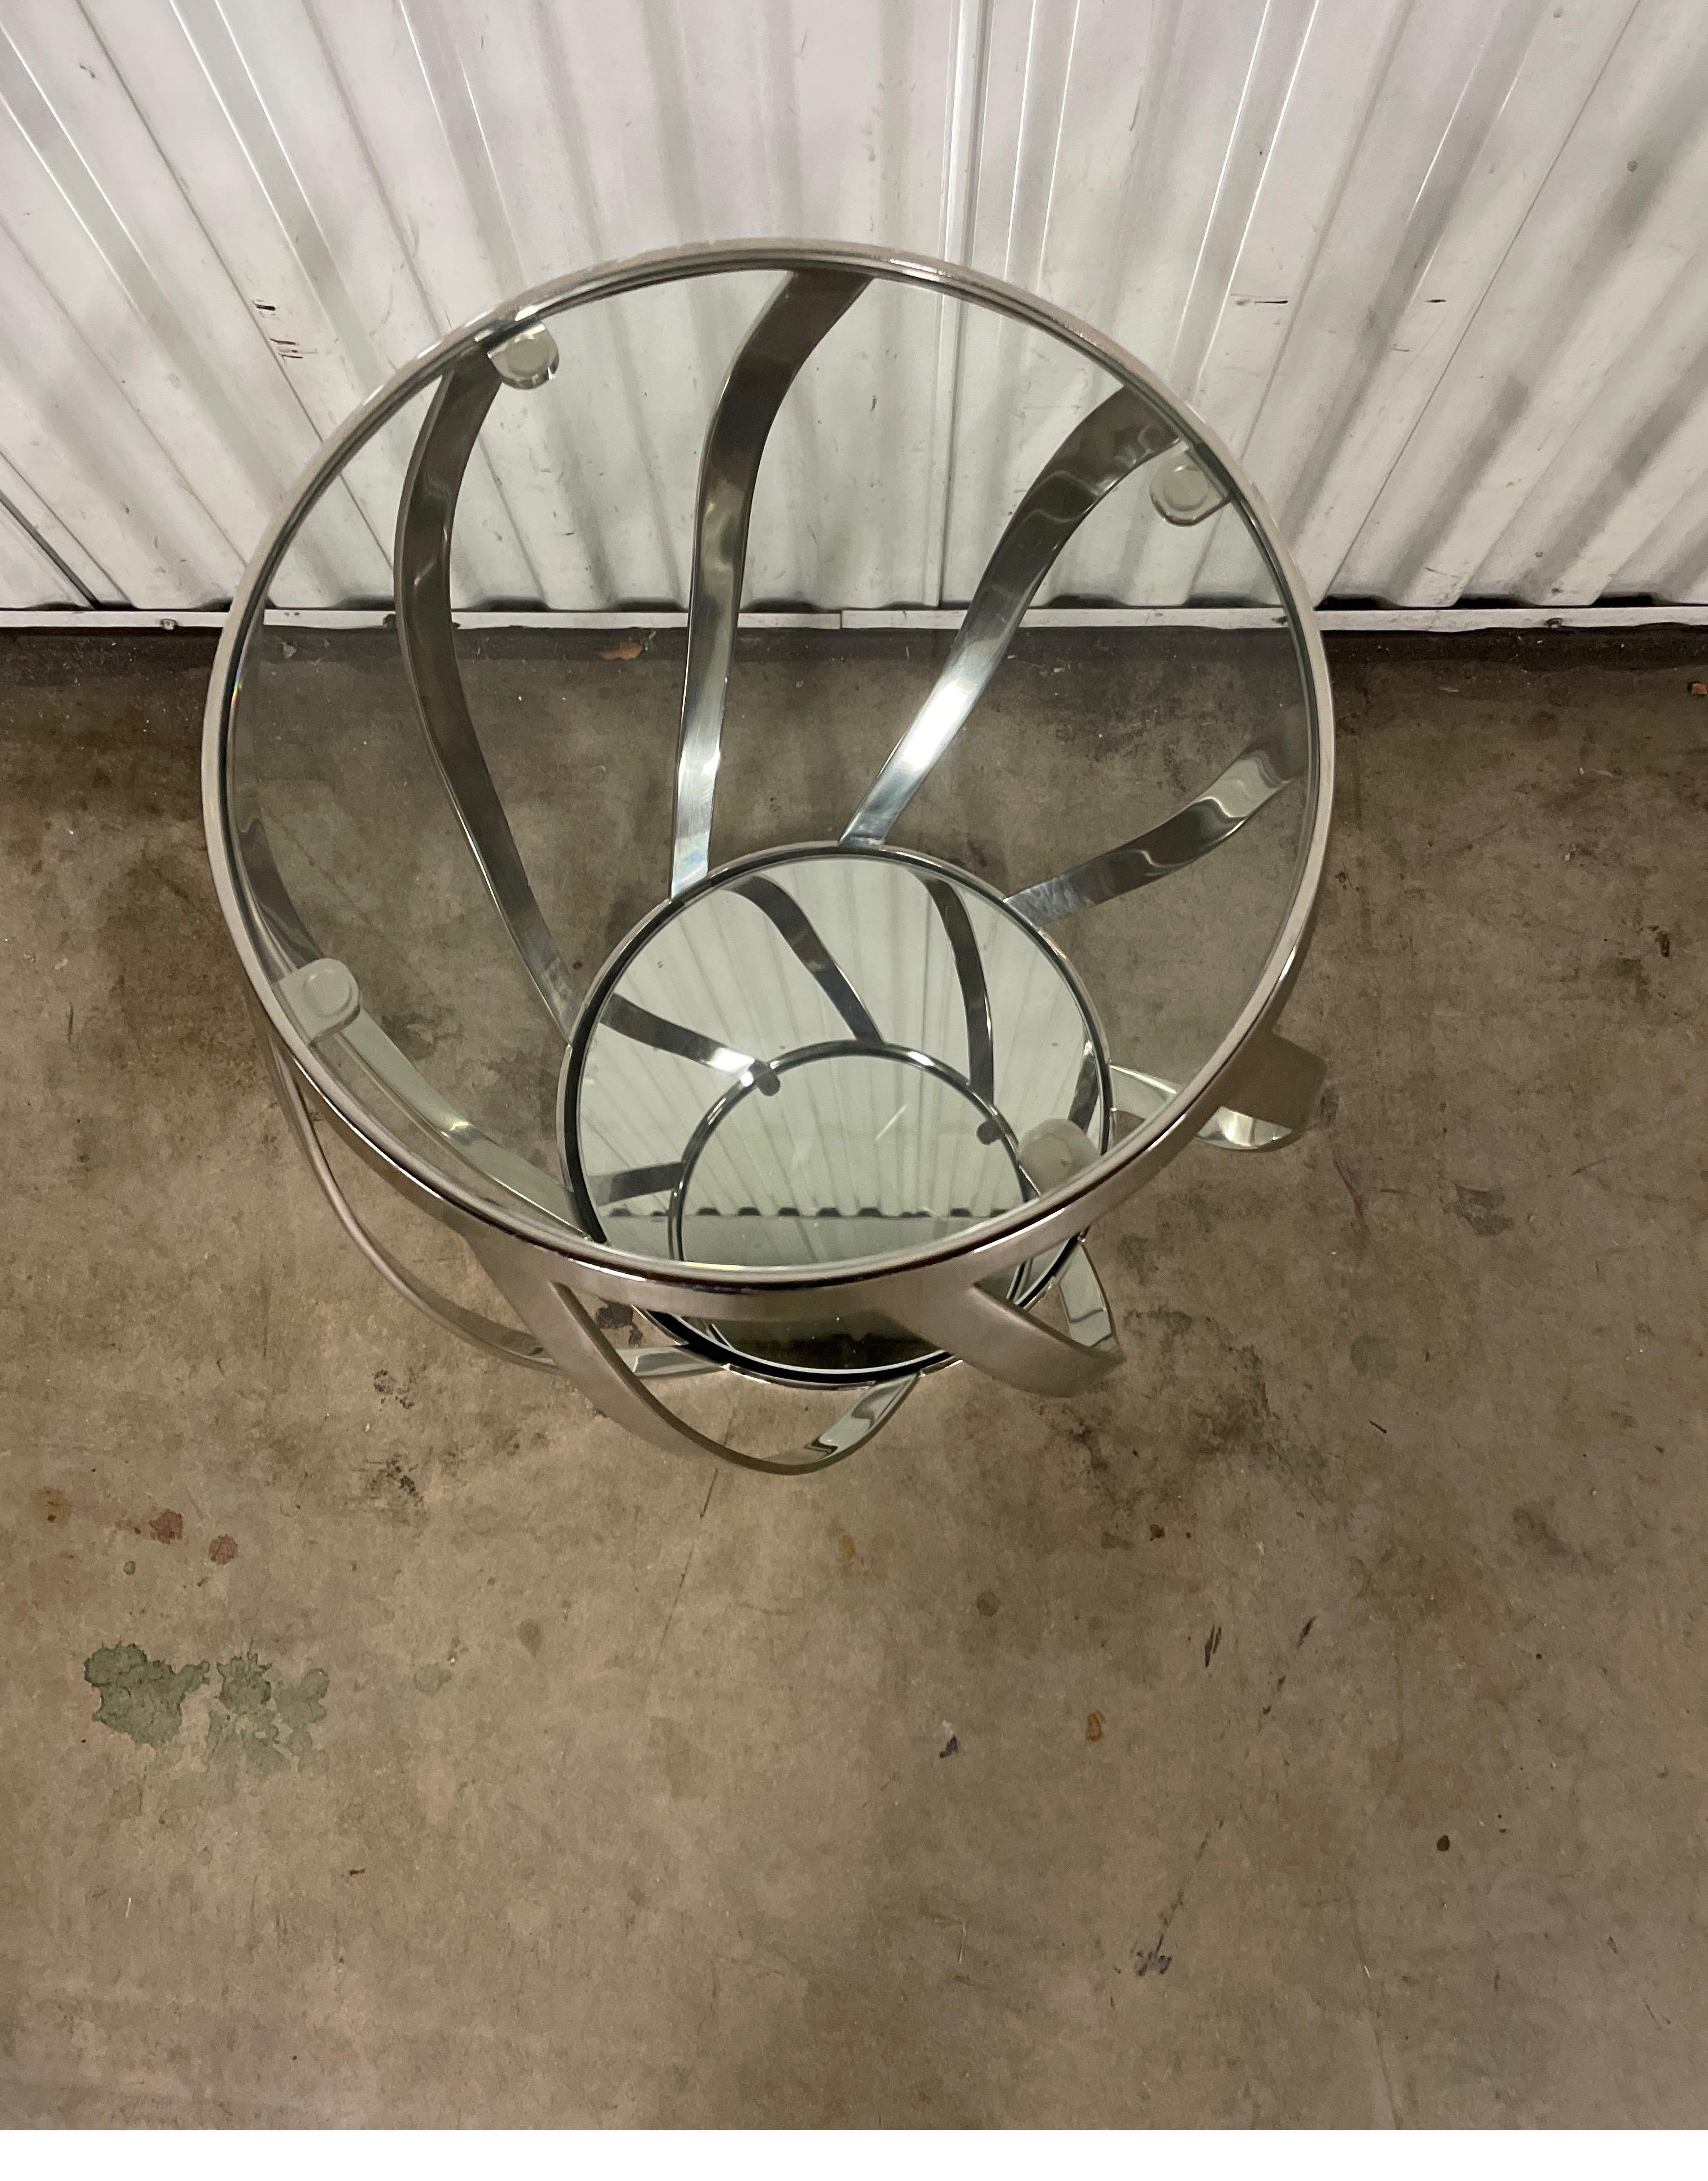 Vintage spiralförmiger Getränketisch aus Chrom und Glas. Der Boden ist mit einem Stück Spiegel versehen. Das obere Glas misst 12